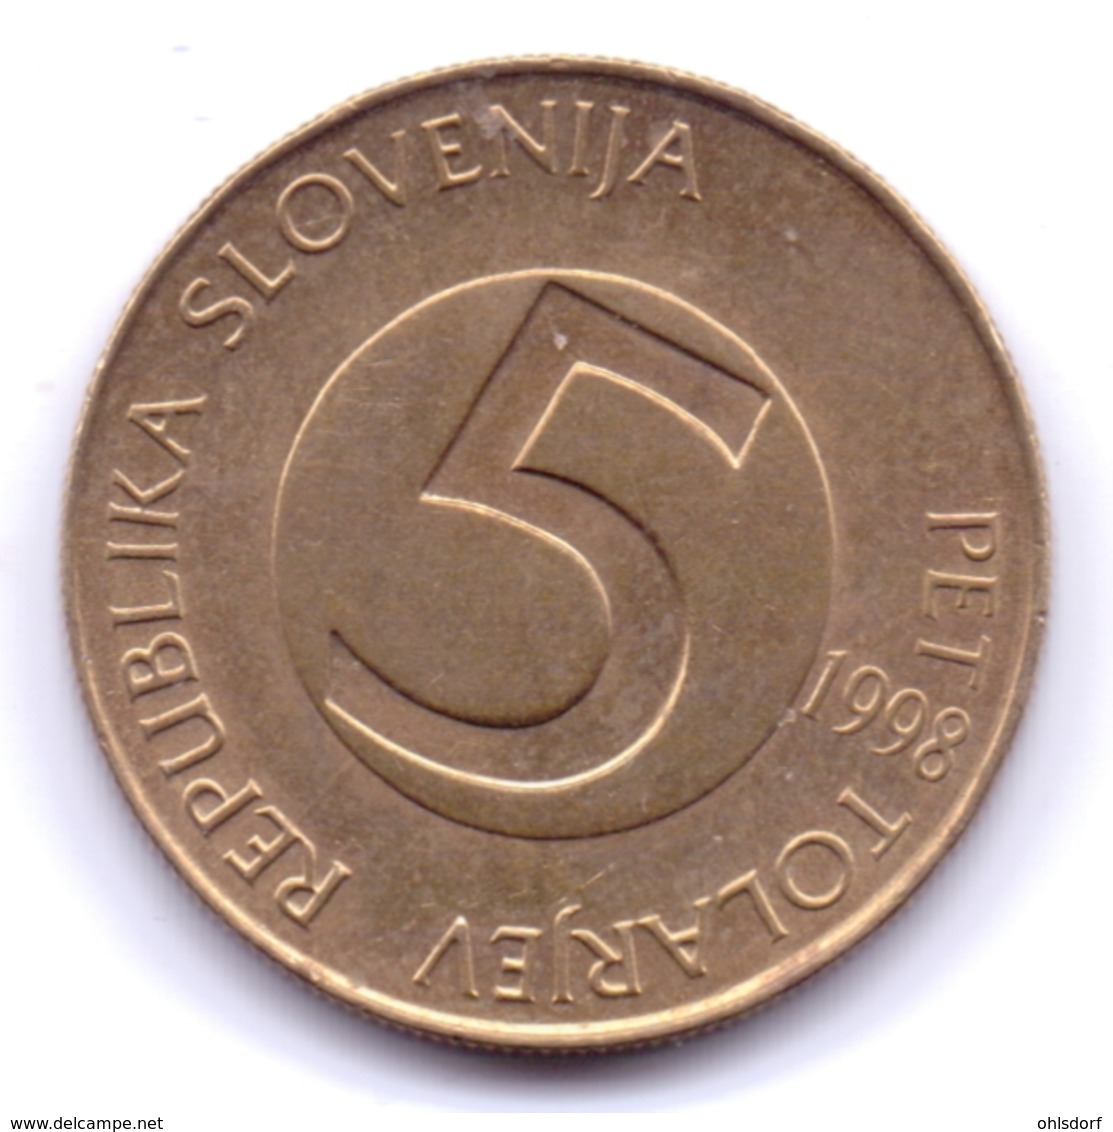 SLOVENIA 1998: 5 Tolarjev, KM 6 - Slovenië